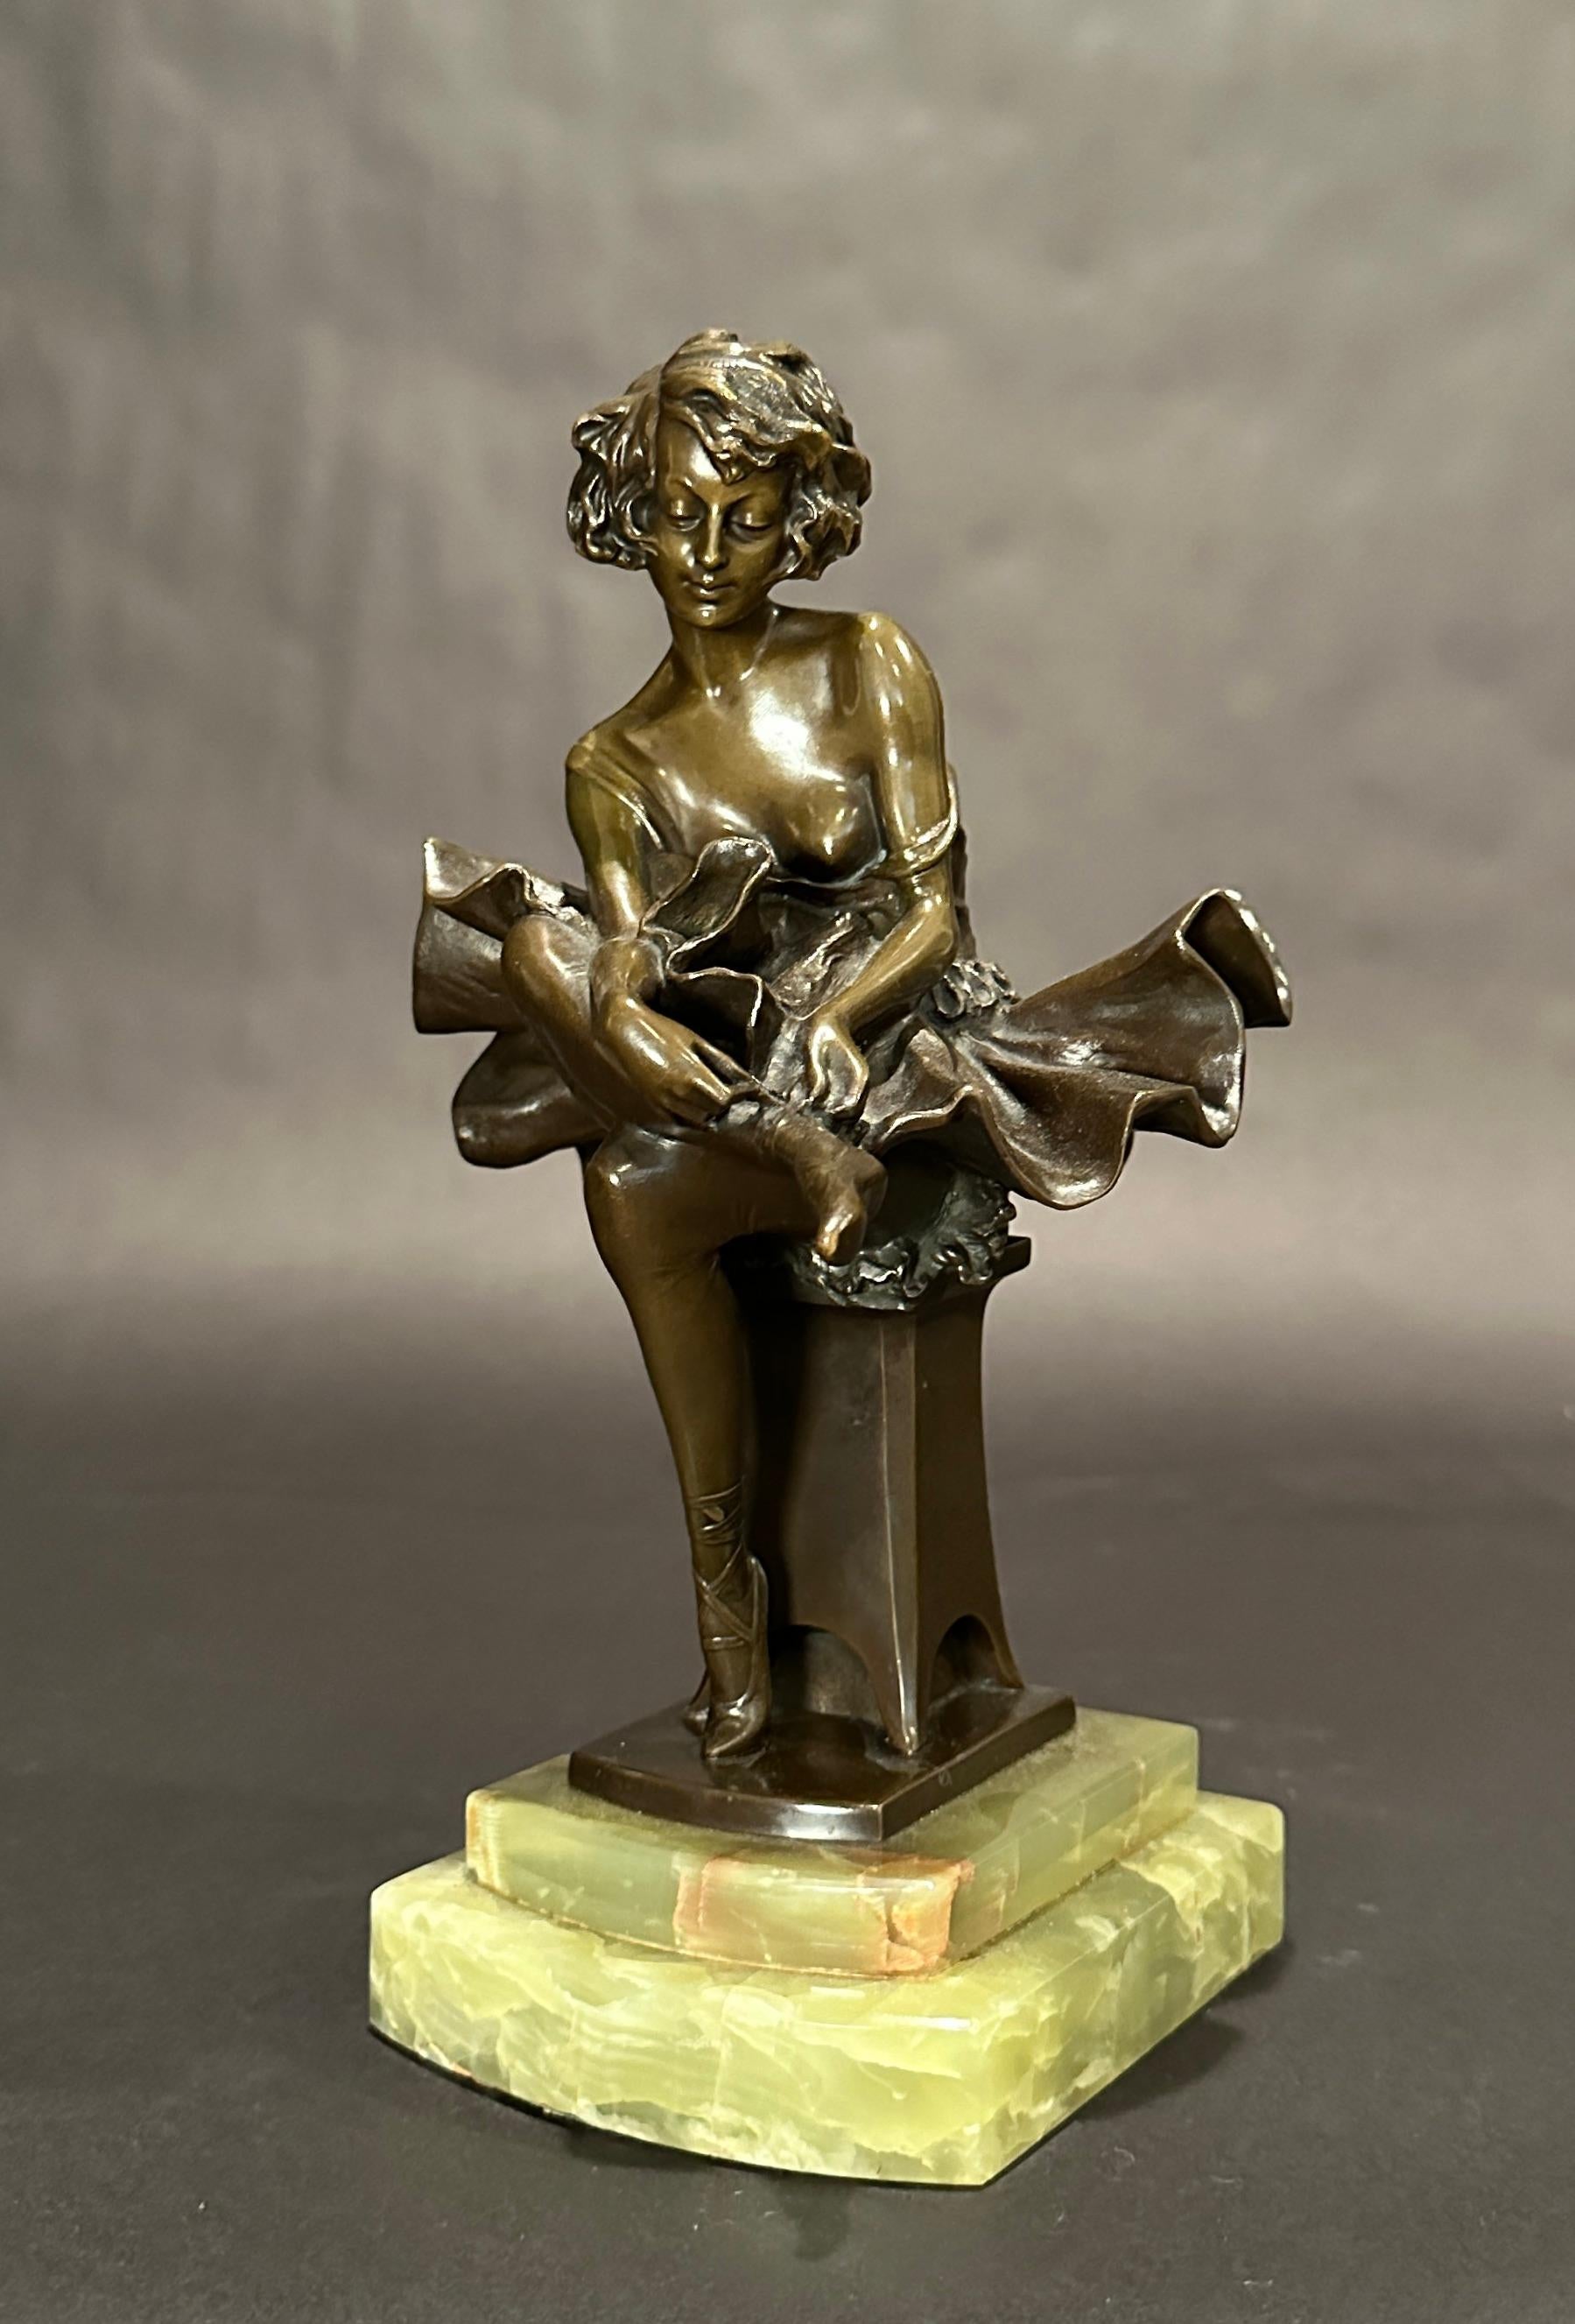 Bronzeskulptur von Josef Lorenzo (1852-1950) aus der Zeit des Art déco, die eine schöne Ballerina zeigt, die in traditioneller Kleidung mit Tutu sitzt und ihre Spitzenschuhe bei der Vorbereitung auf das Training oder die Aufführung bindet. Reiche